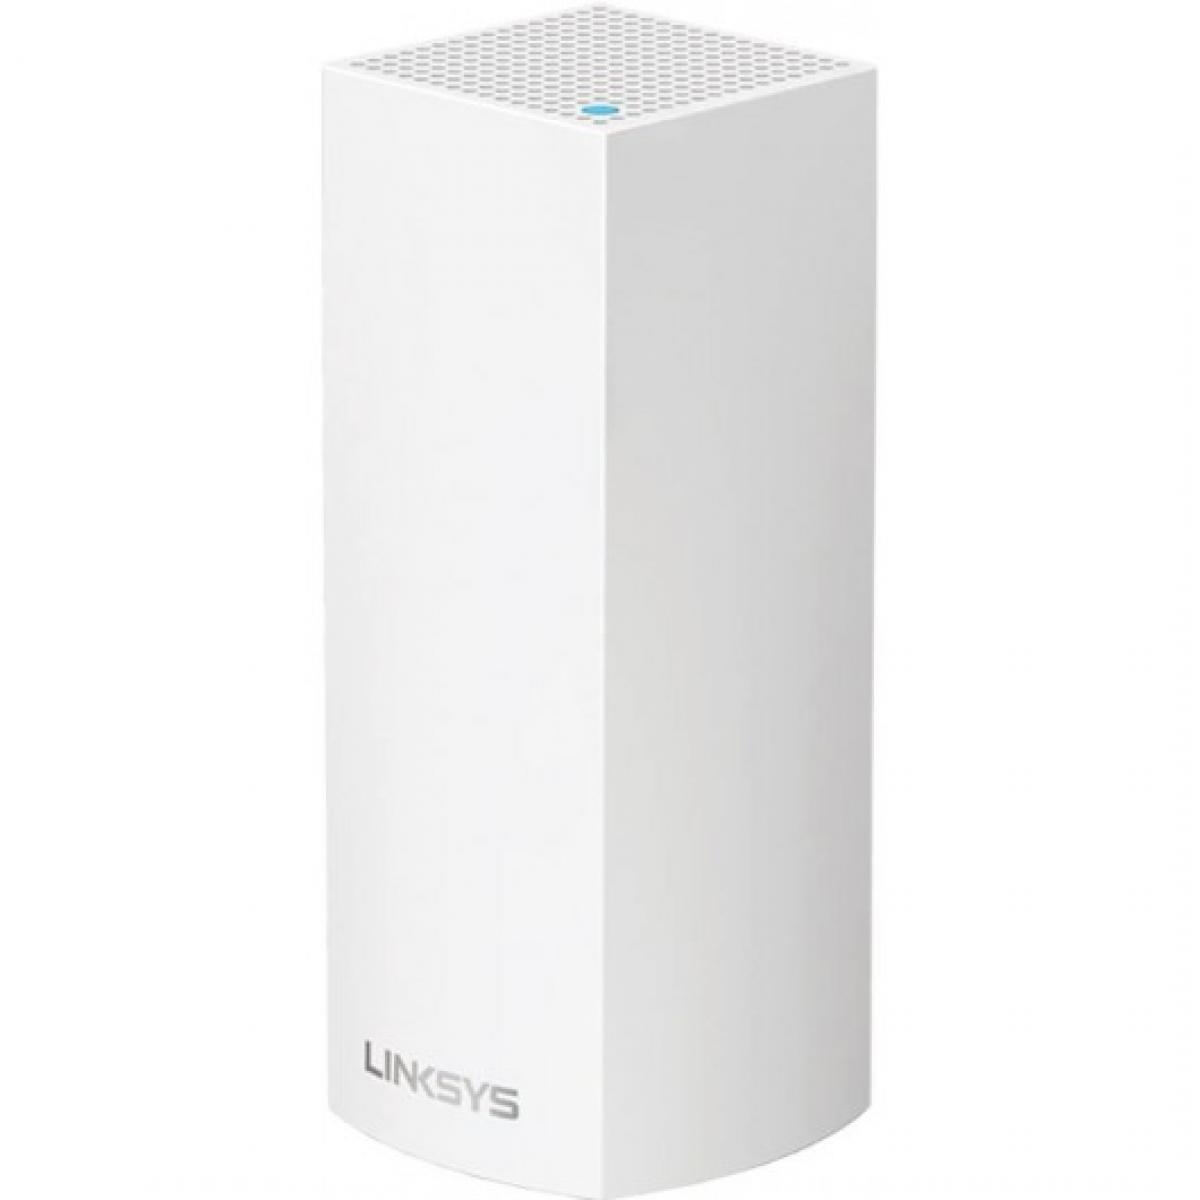 Linksys - Linksys Velop, le système Wi-Fi ultra-rapide - Souris